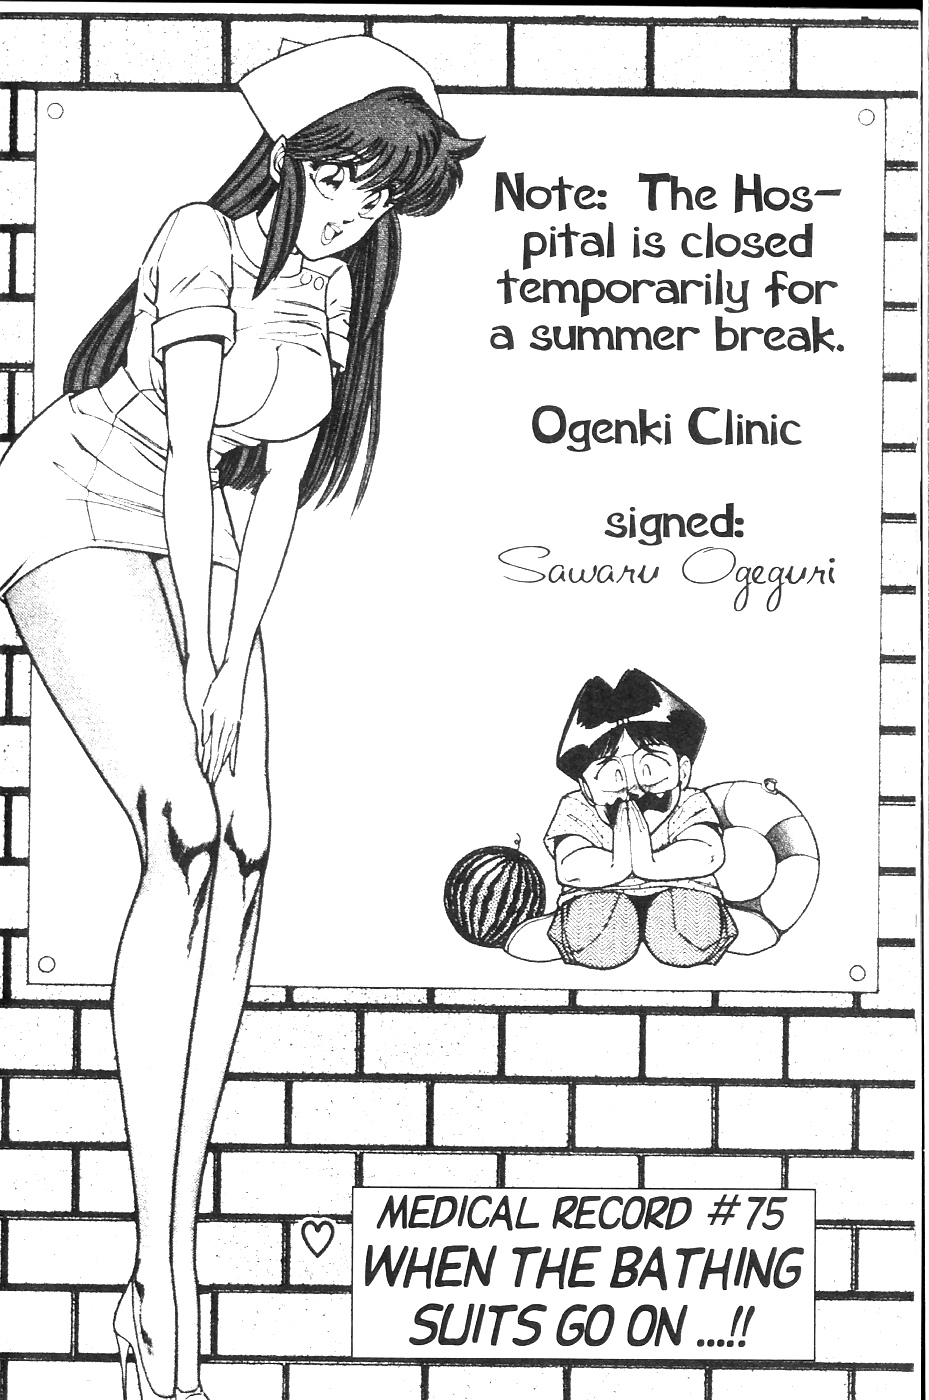 Ogenki clinic 6 #36863536